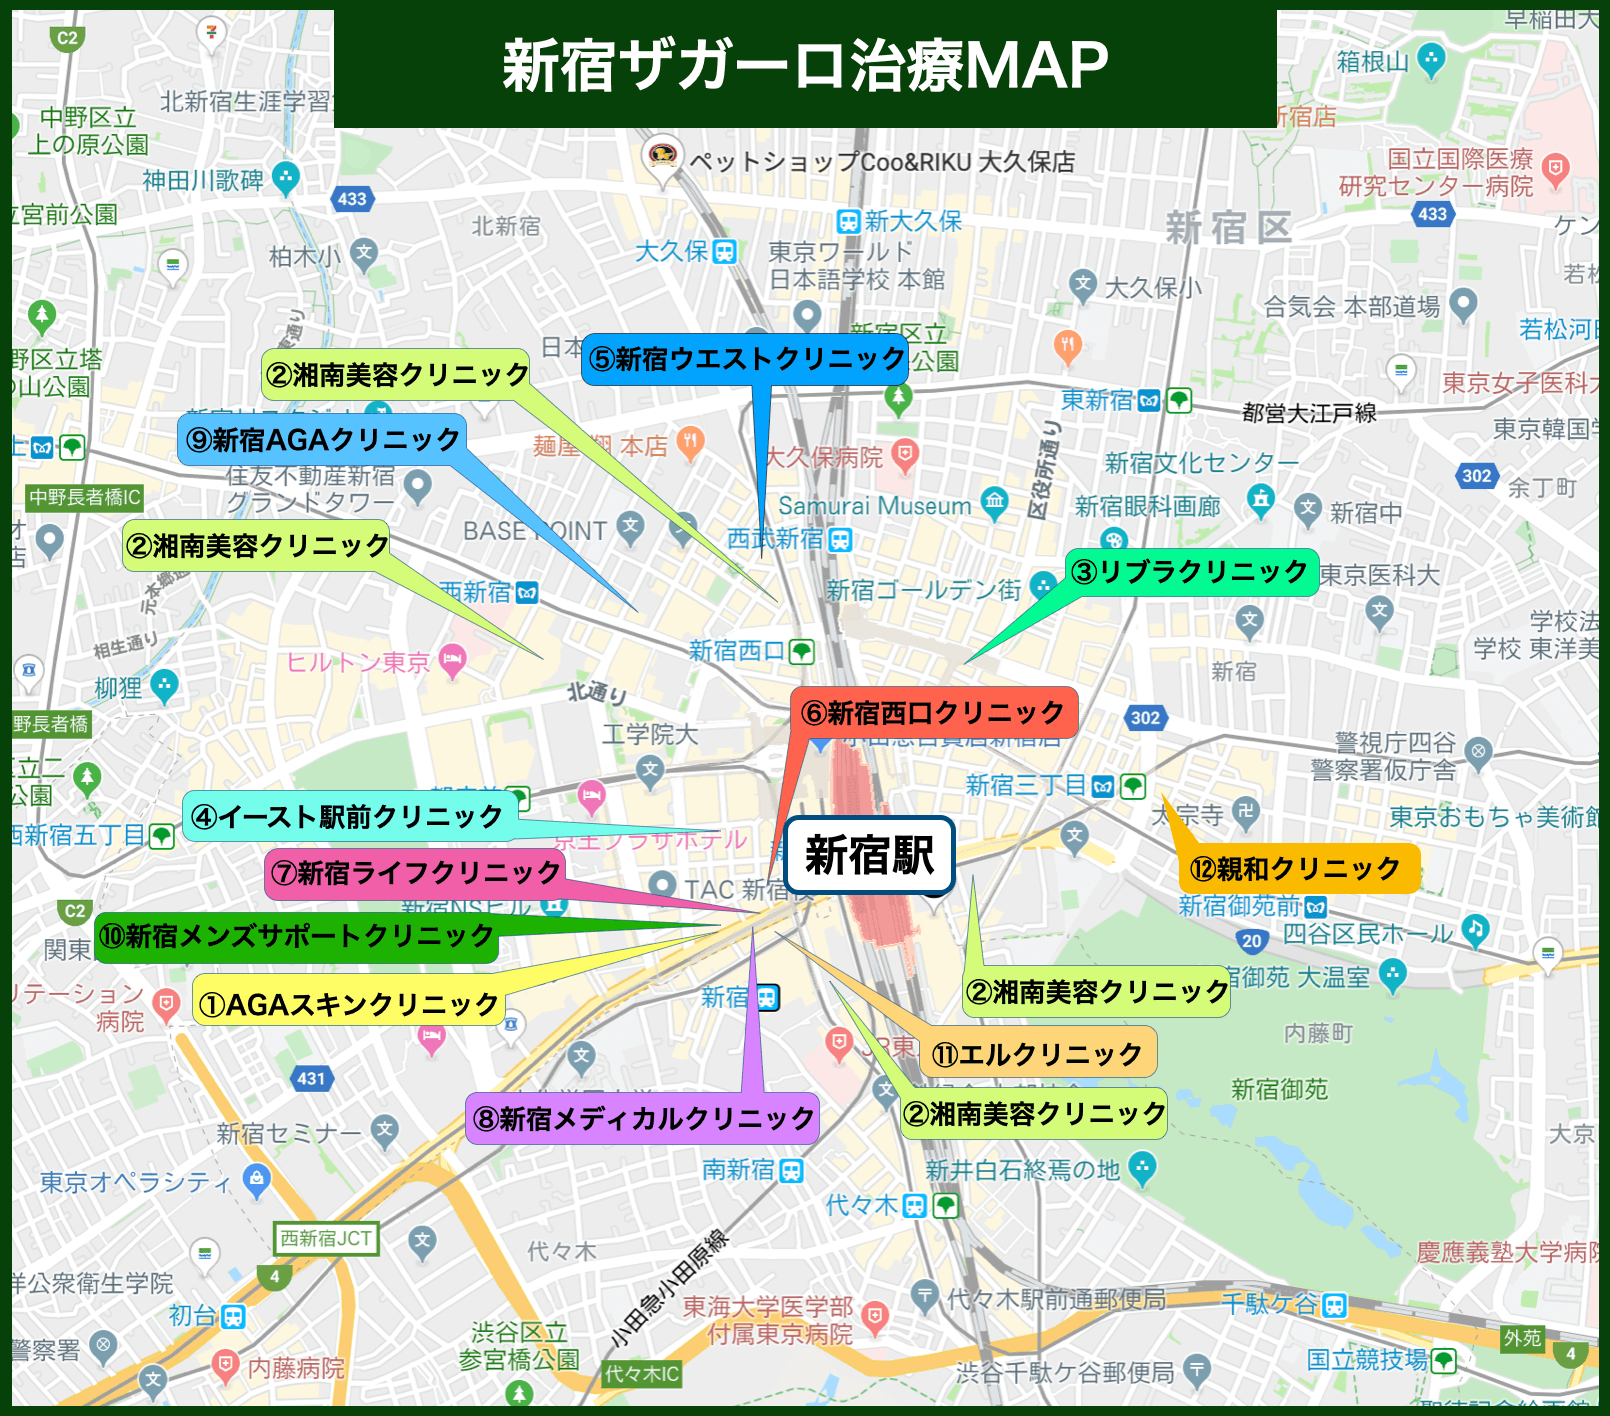 新宿ザガーロ治療MAP